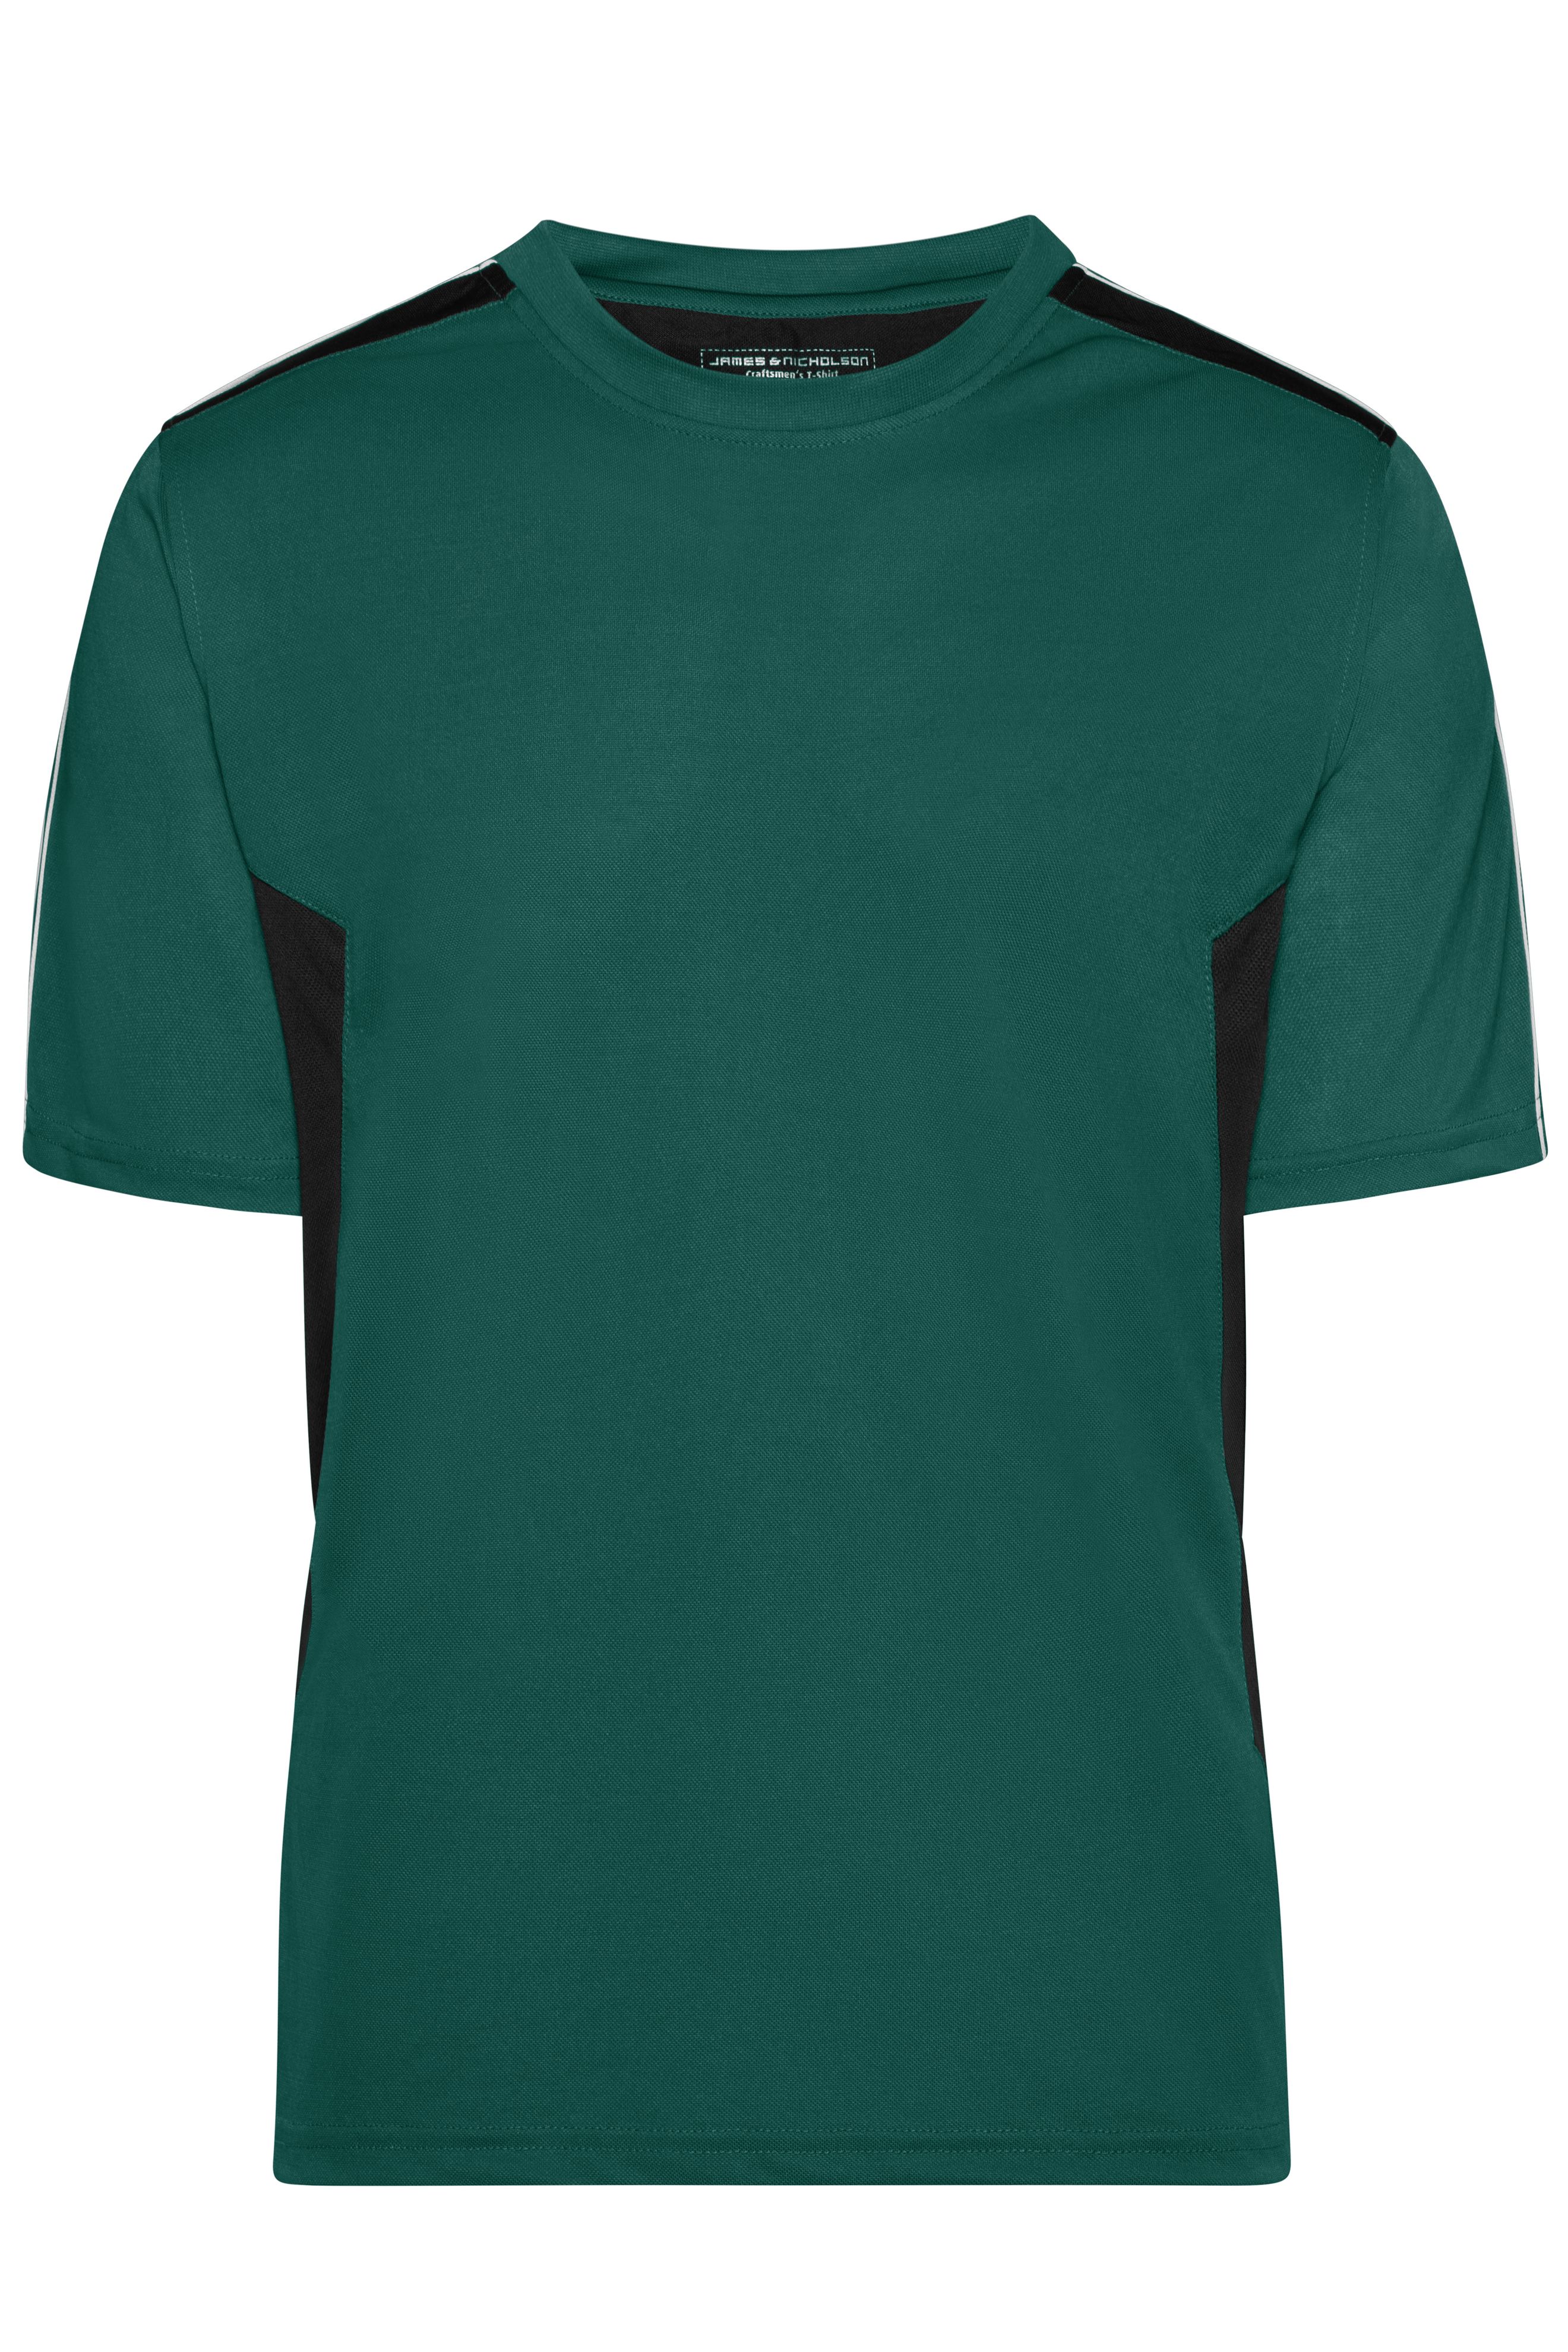 Craftsmen T-Shirt - STRONG - JN827 Funktions T-Shirt